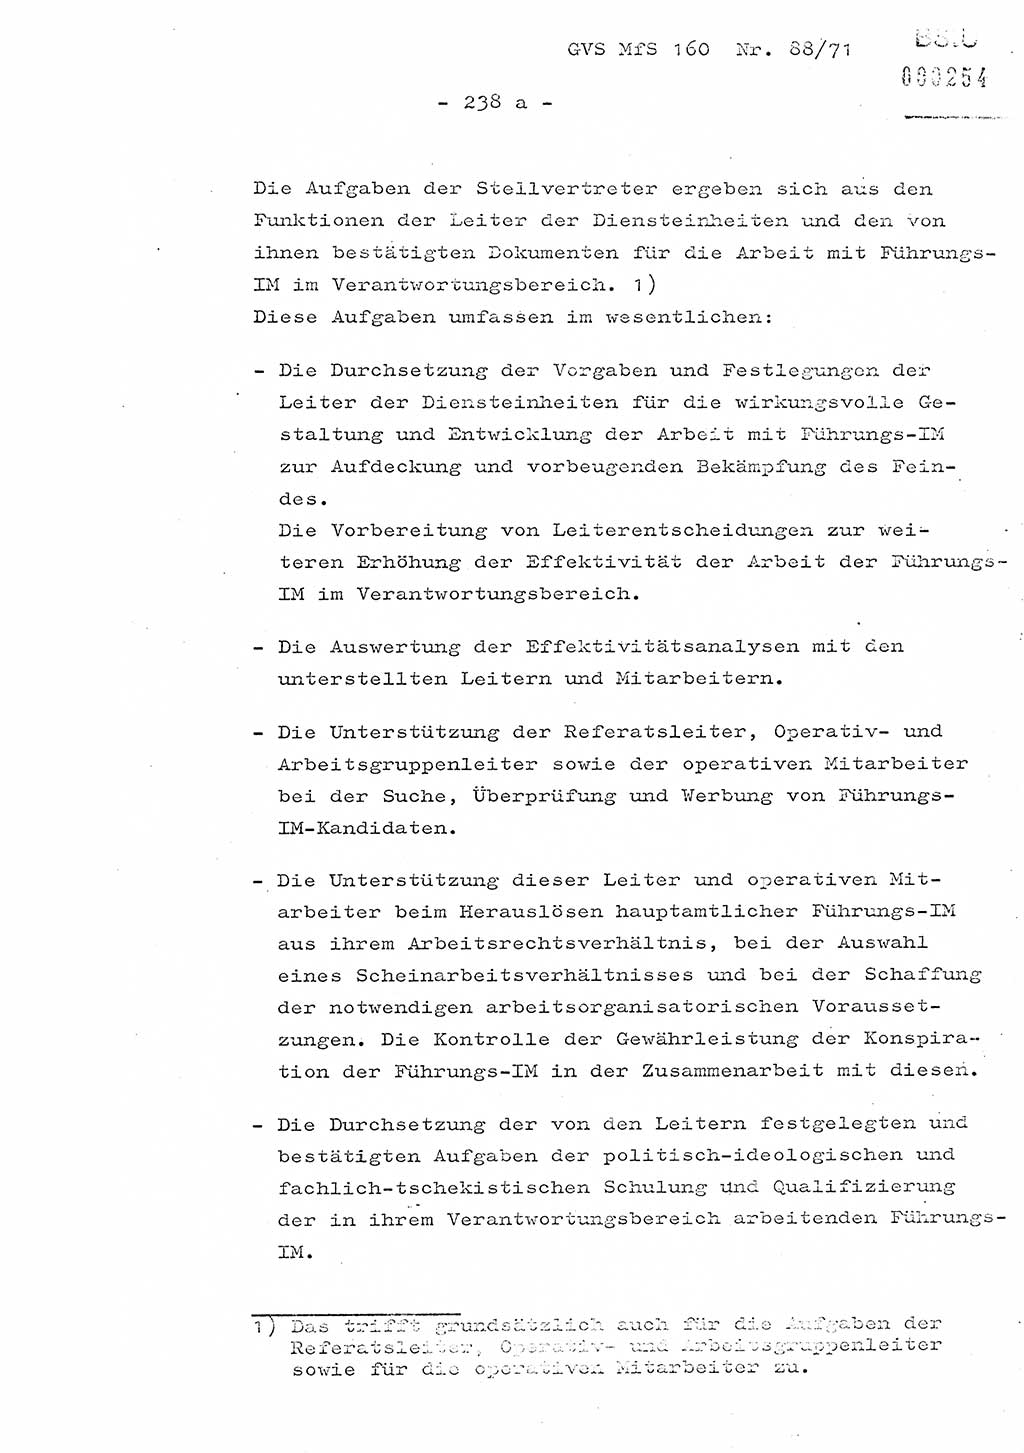 Dissertation Oberstleutnant Josef Schwarz (BV Schwerin), Major Fritz Amm (JHS), Hauptmann Peter Gräßler (JHS), Ministerium für Staatssicherheit (MfS) [Deutsche Demokratische Republik (DDR)], Juristische Hochschule (JHS), Geheime Verschlußsache (GVS) 160-88/71, Potsdam 1972, Seite 238/1 (Diss. MfS DDR JHS GVS 160-88/71 1972, S. 238/1)